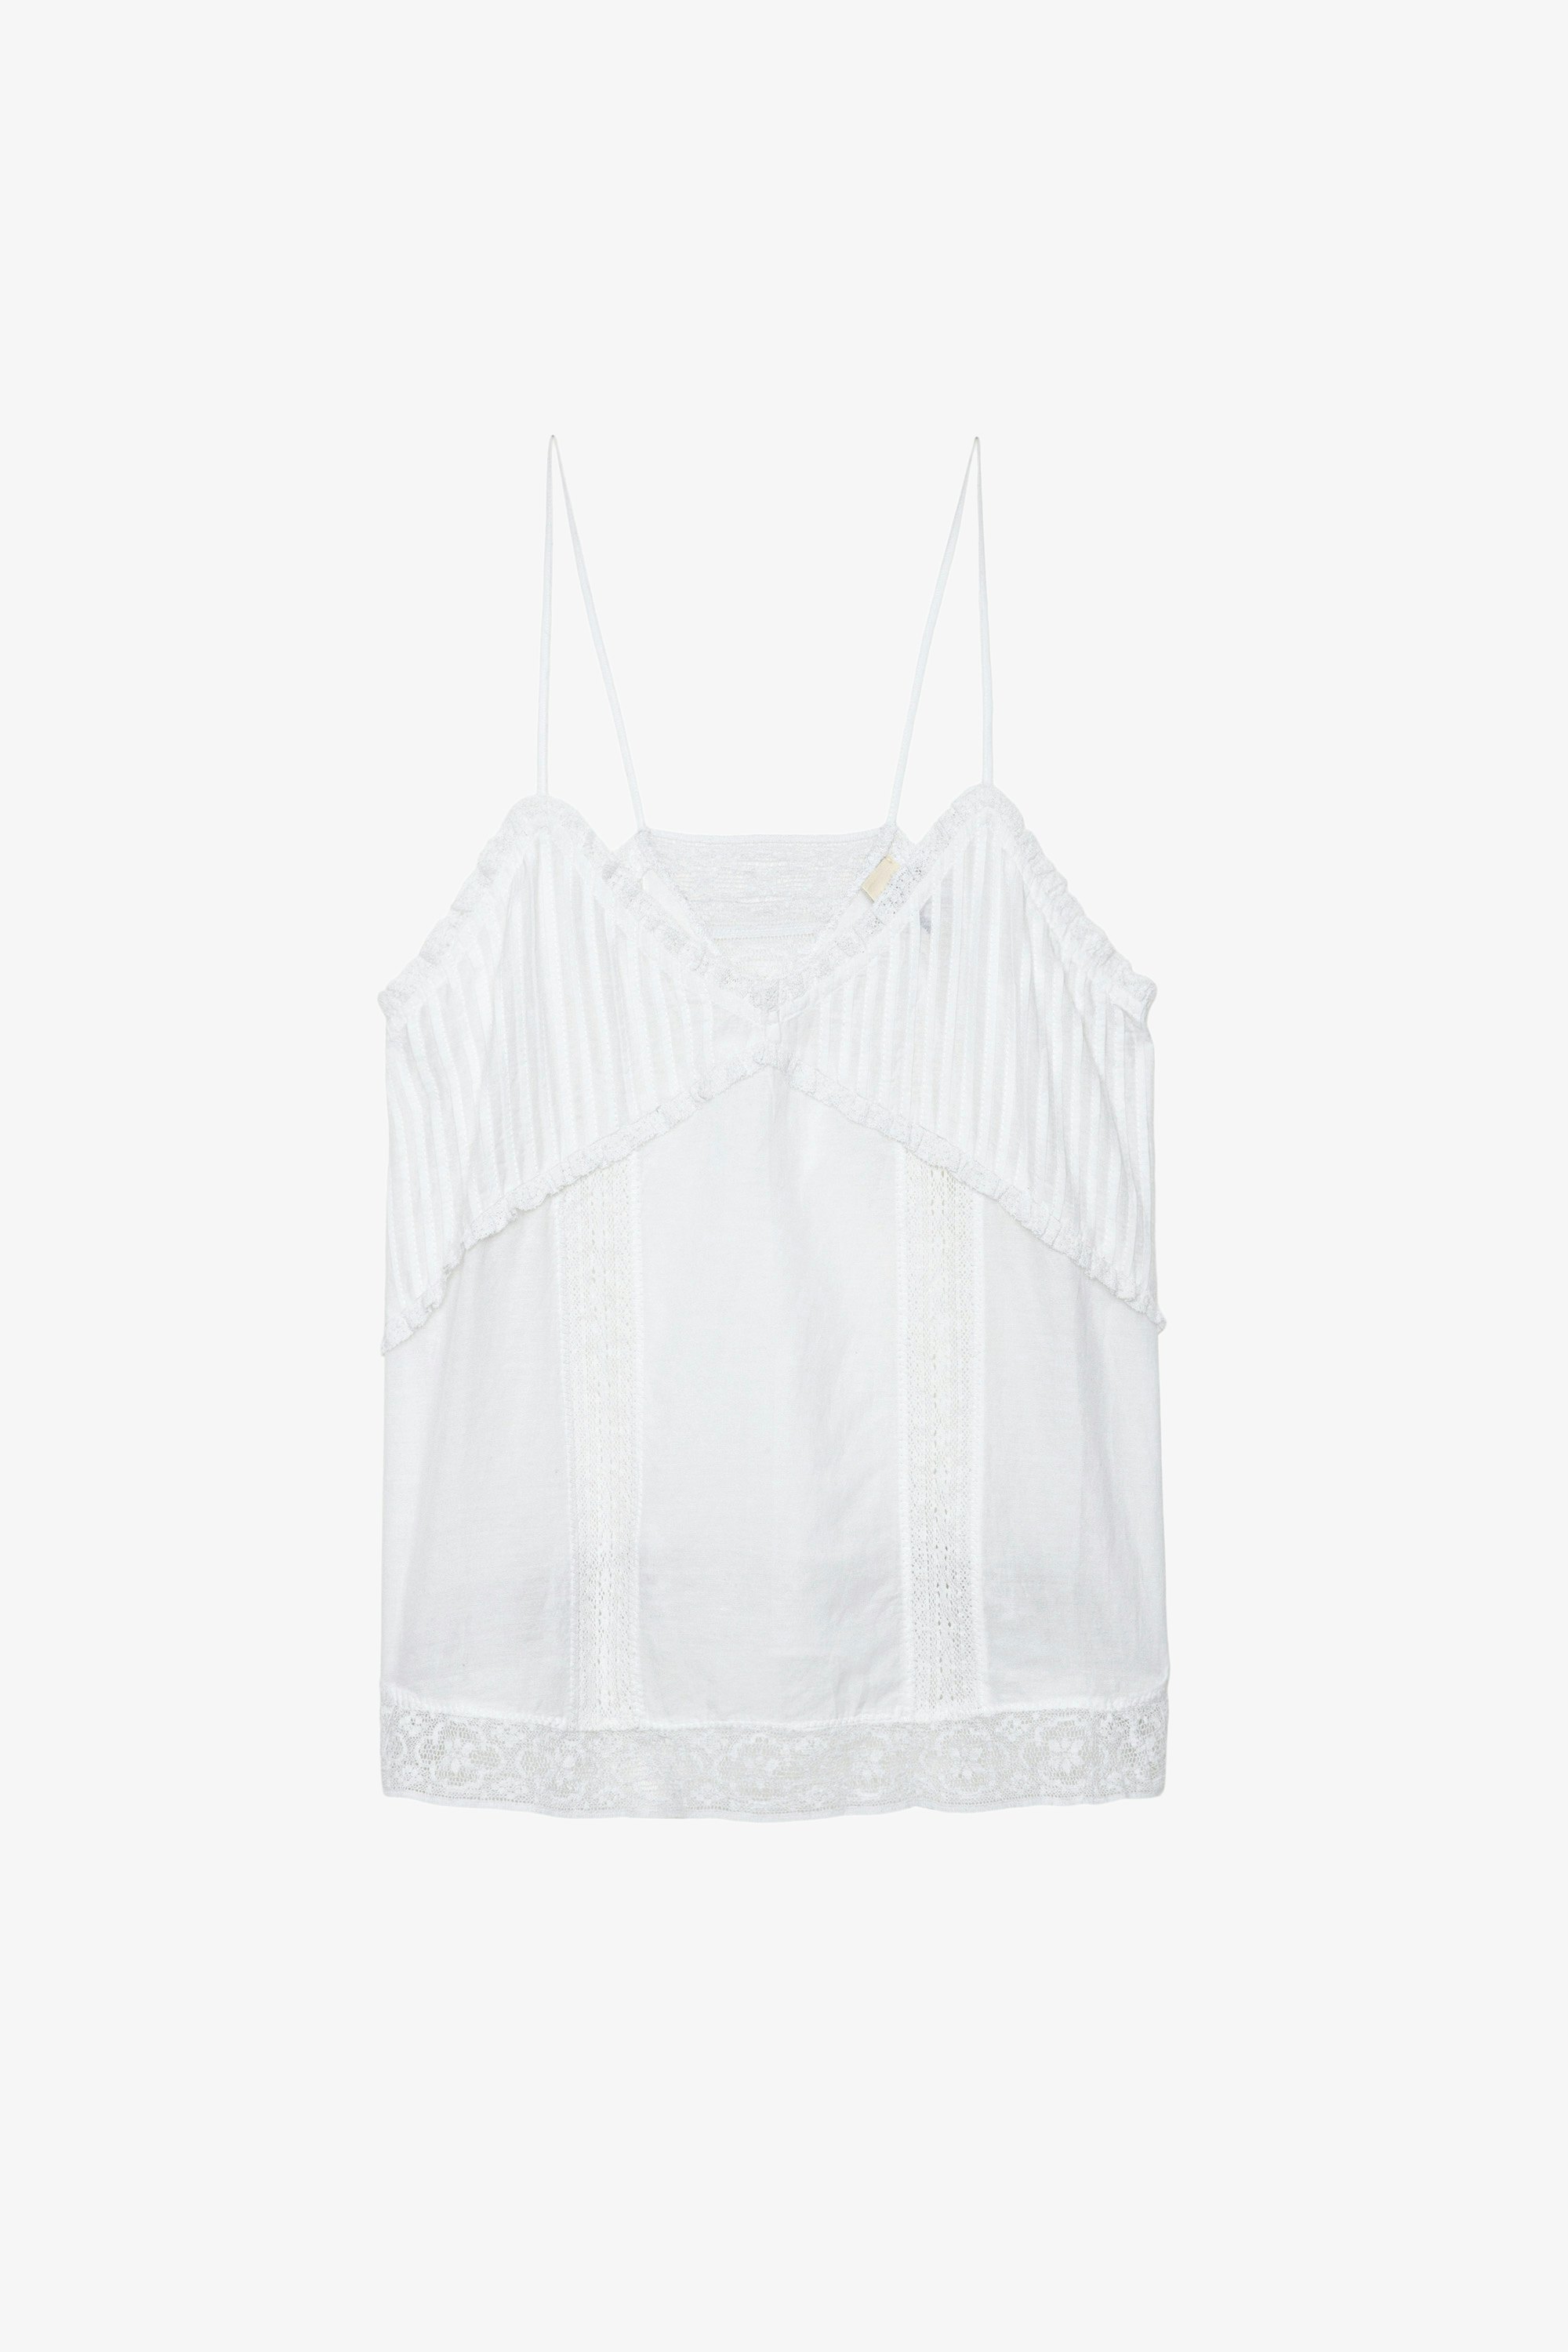 Caraco Calixia - Caraco esprit lingerie en coton blanc à bretelles et bandes de dentelle.